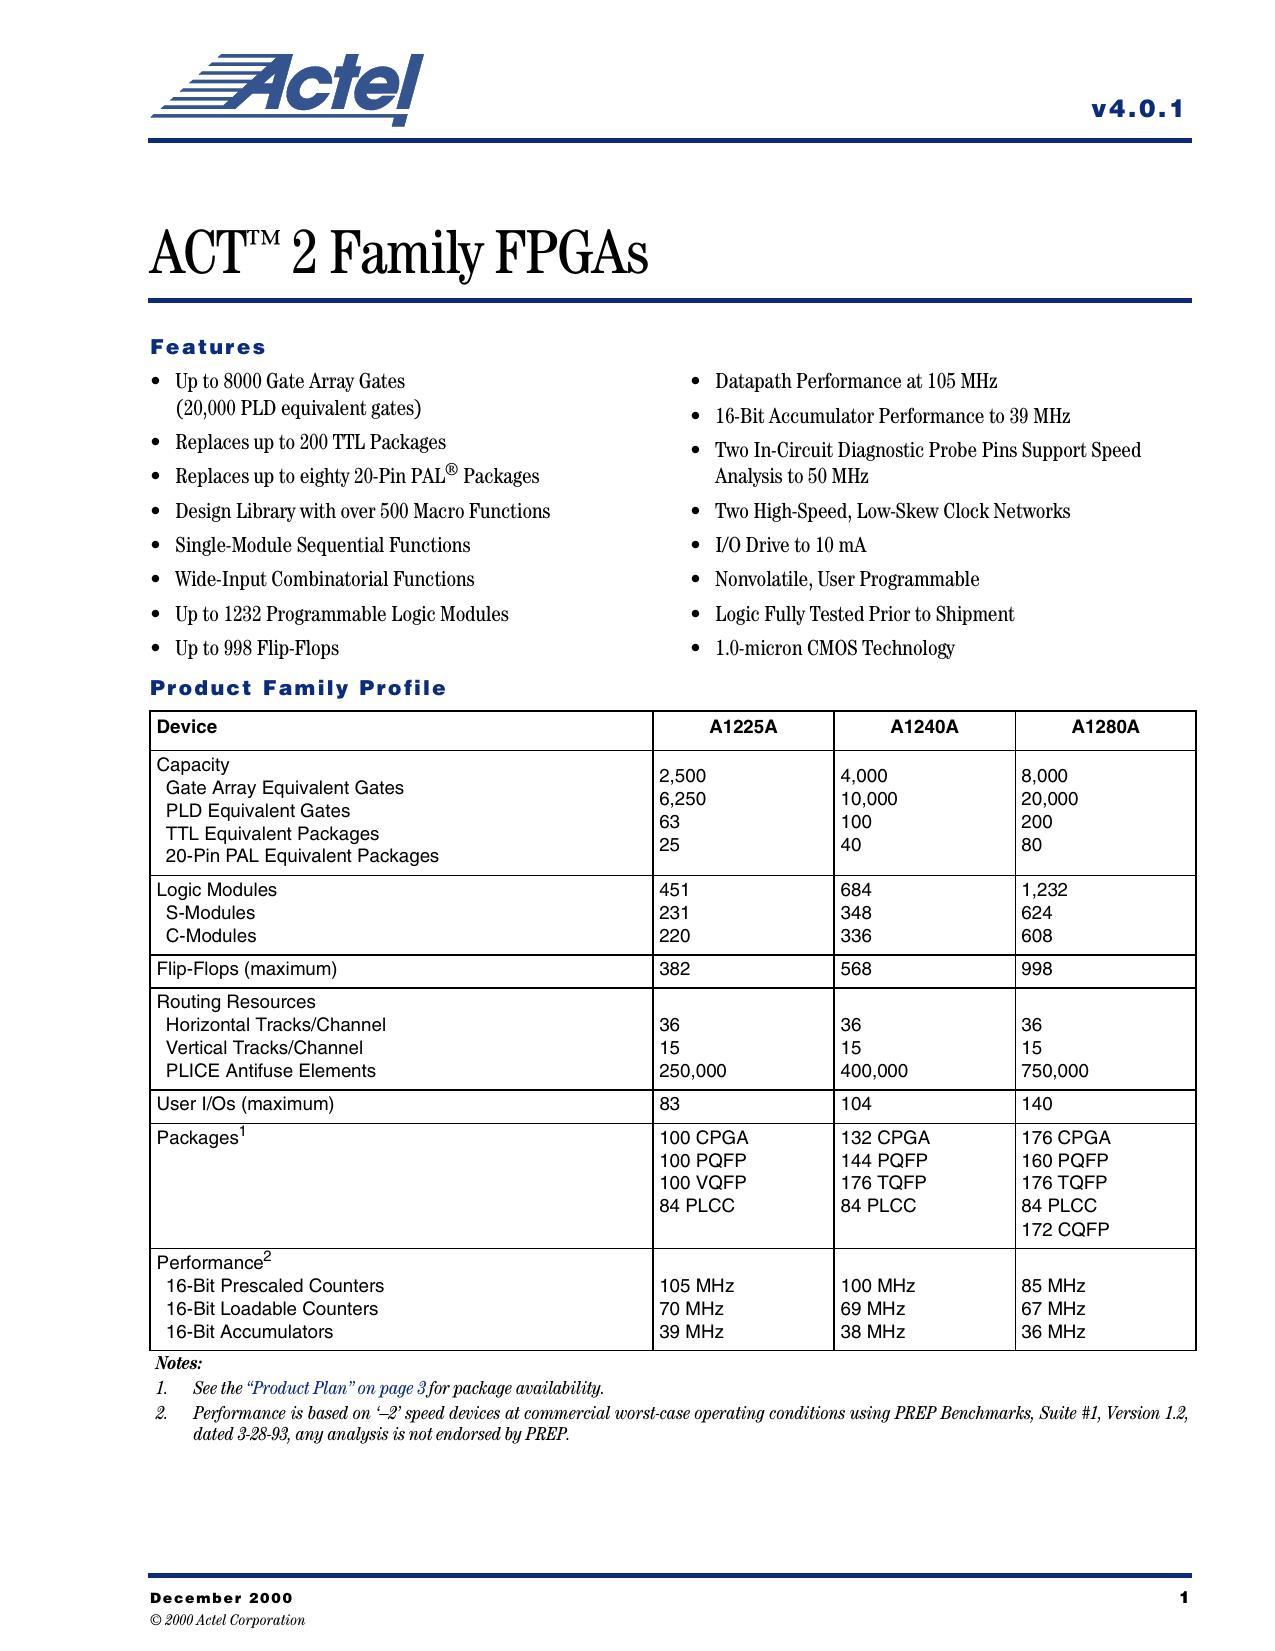 act-2-family-fpgas.pdf